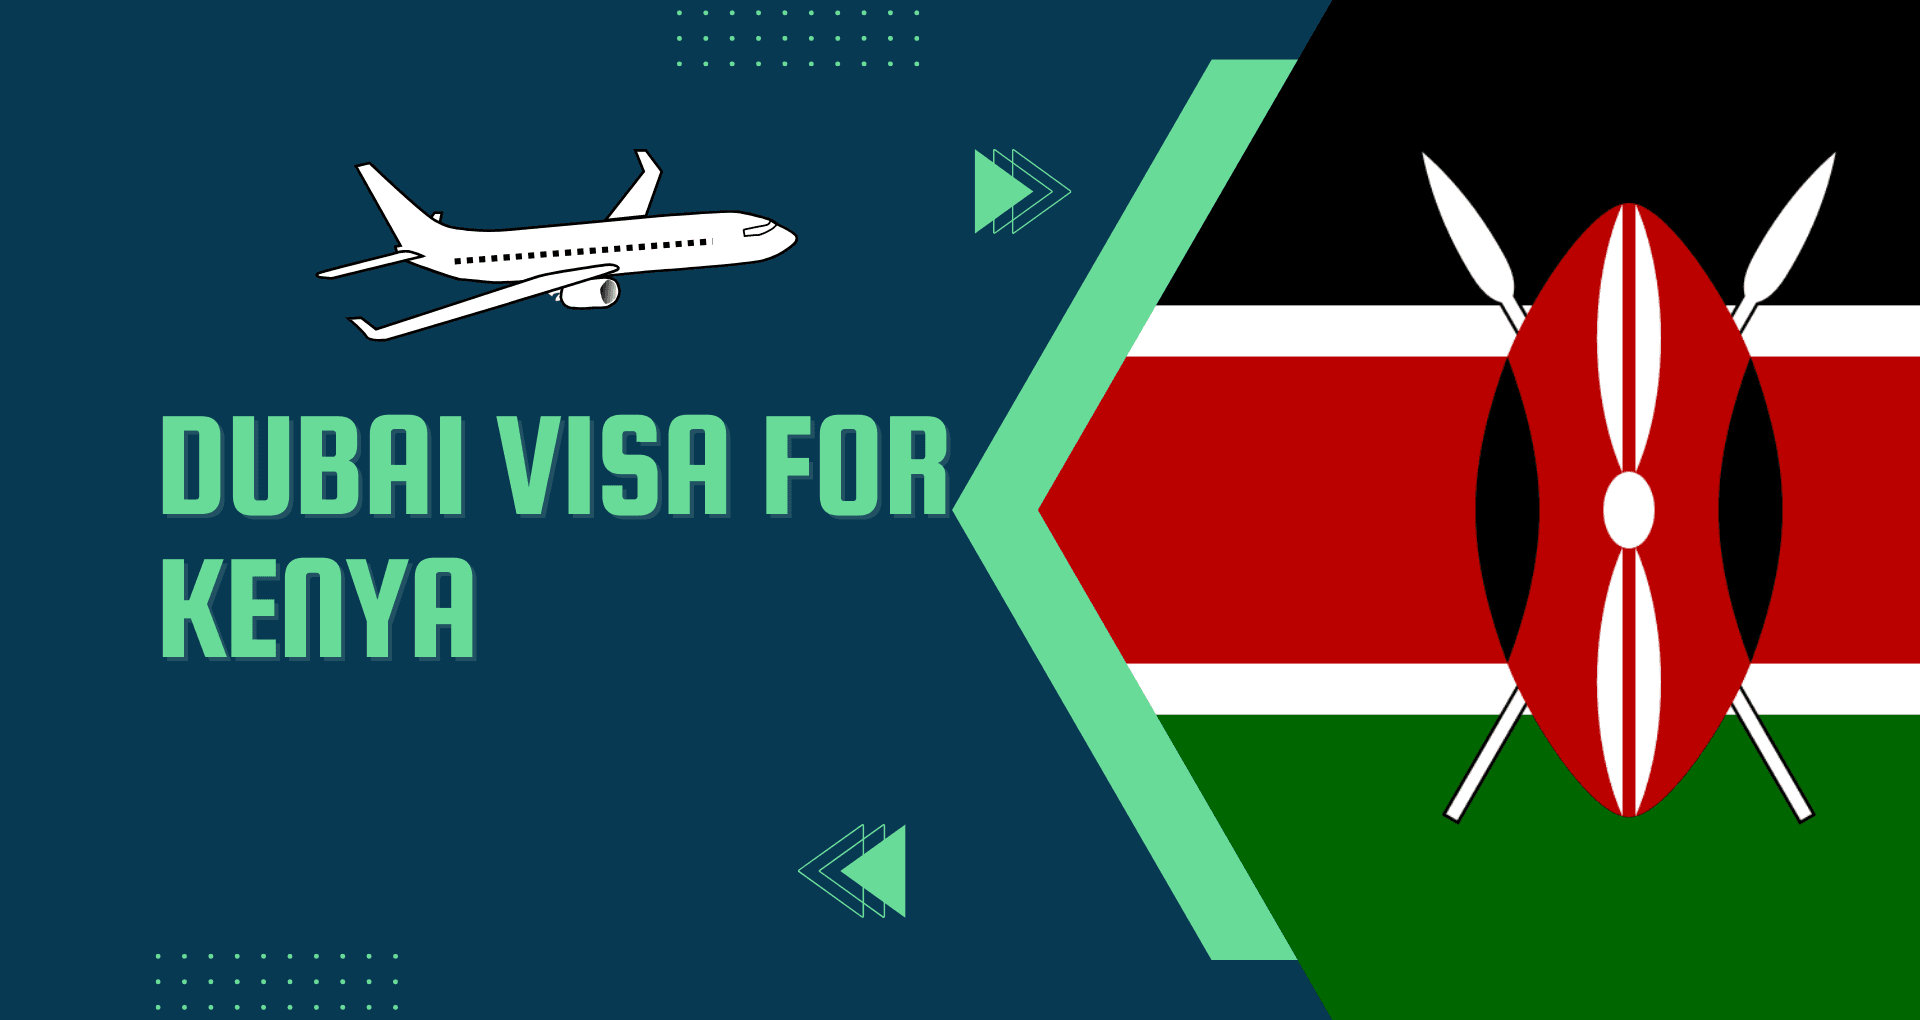 Dubai Visa for Kenya